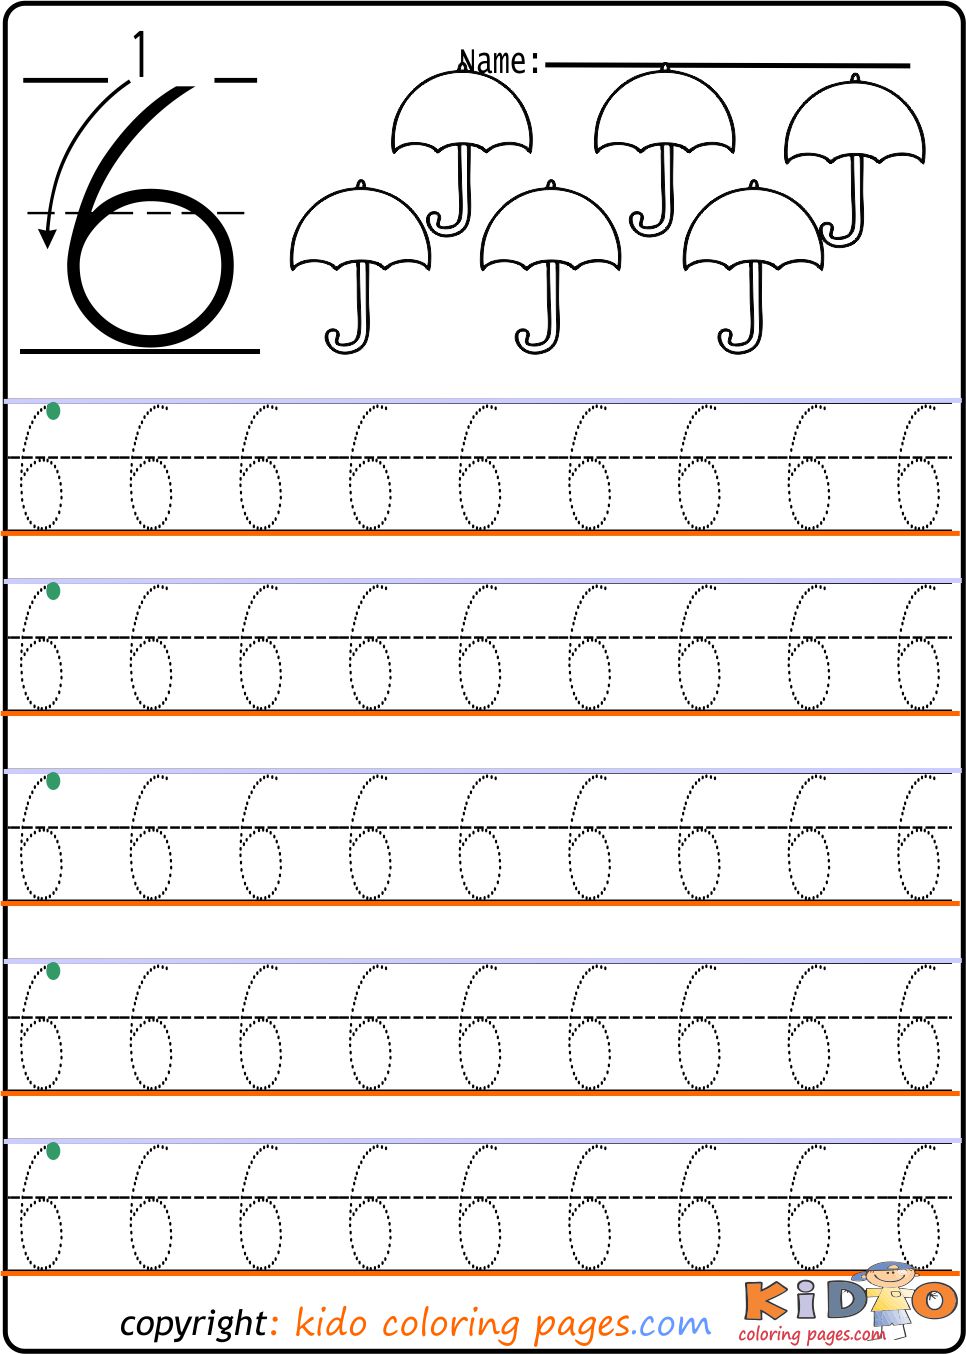 number-tracing-worksheets-3-for-kindergarten-kids-coloring-pages